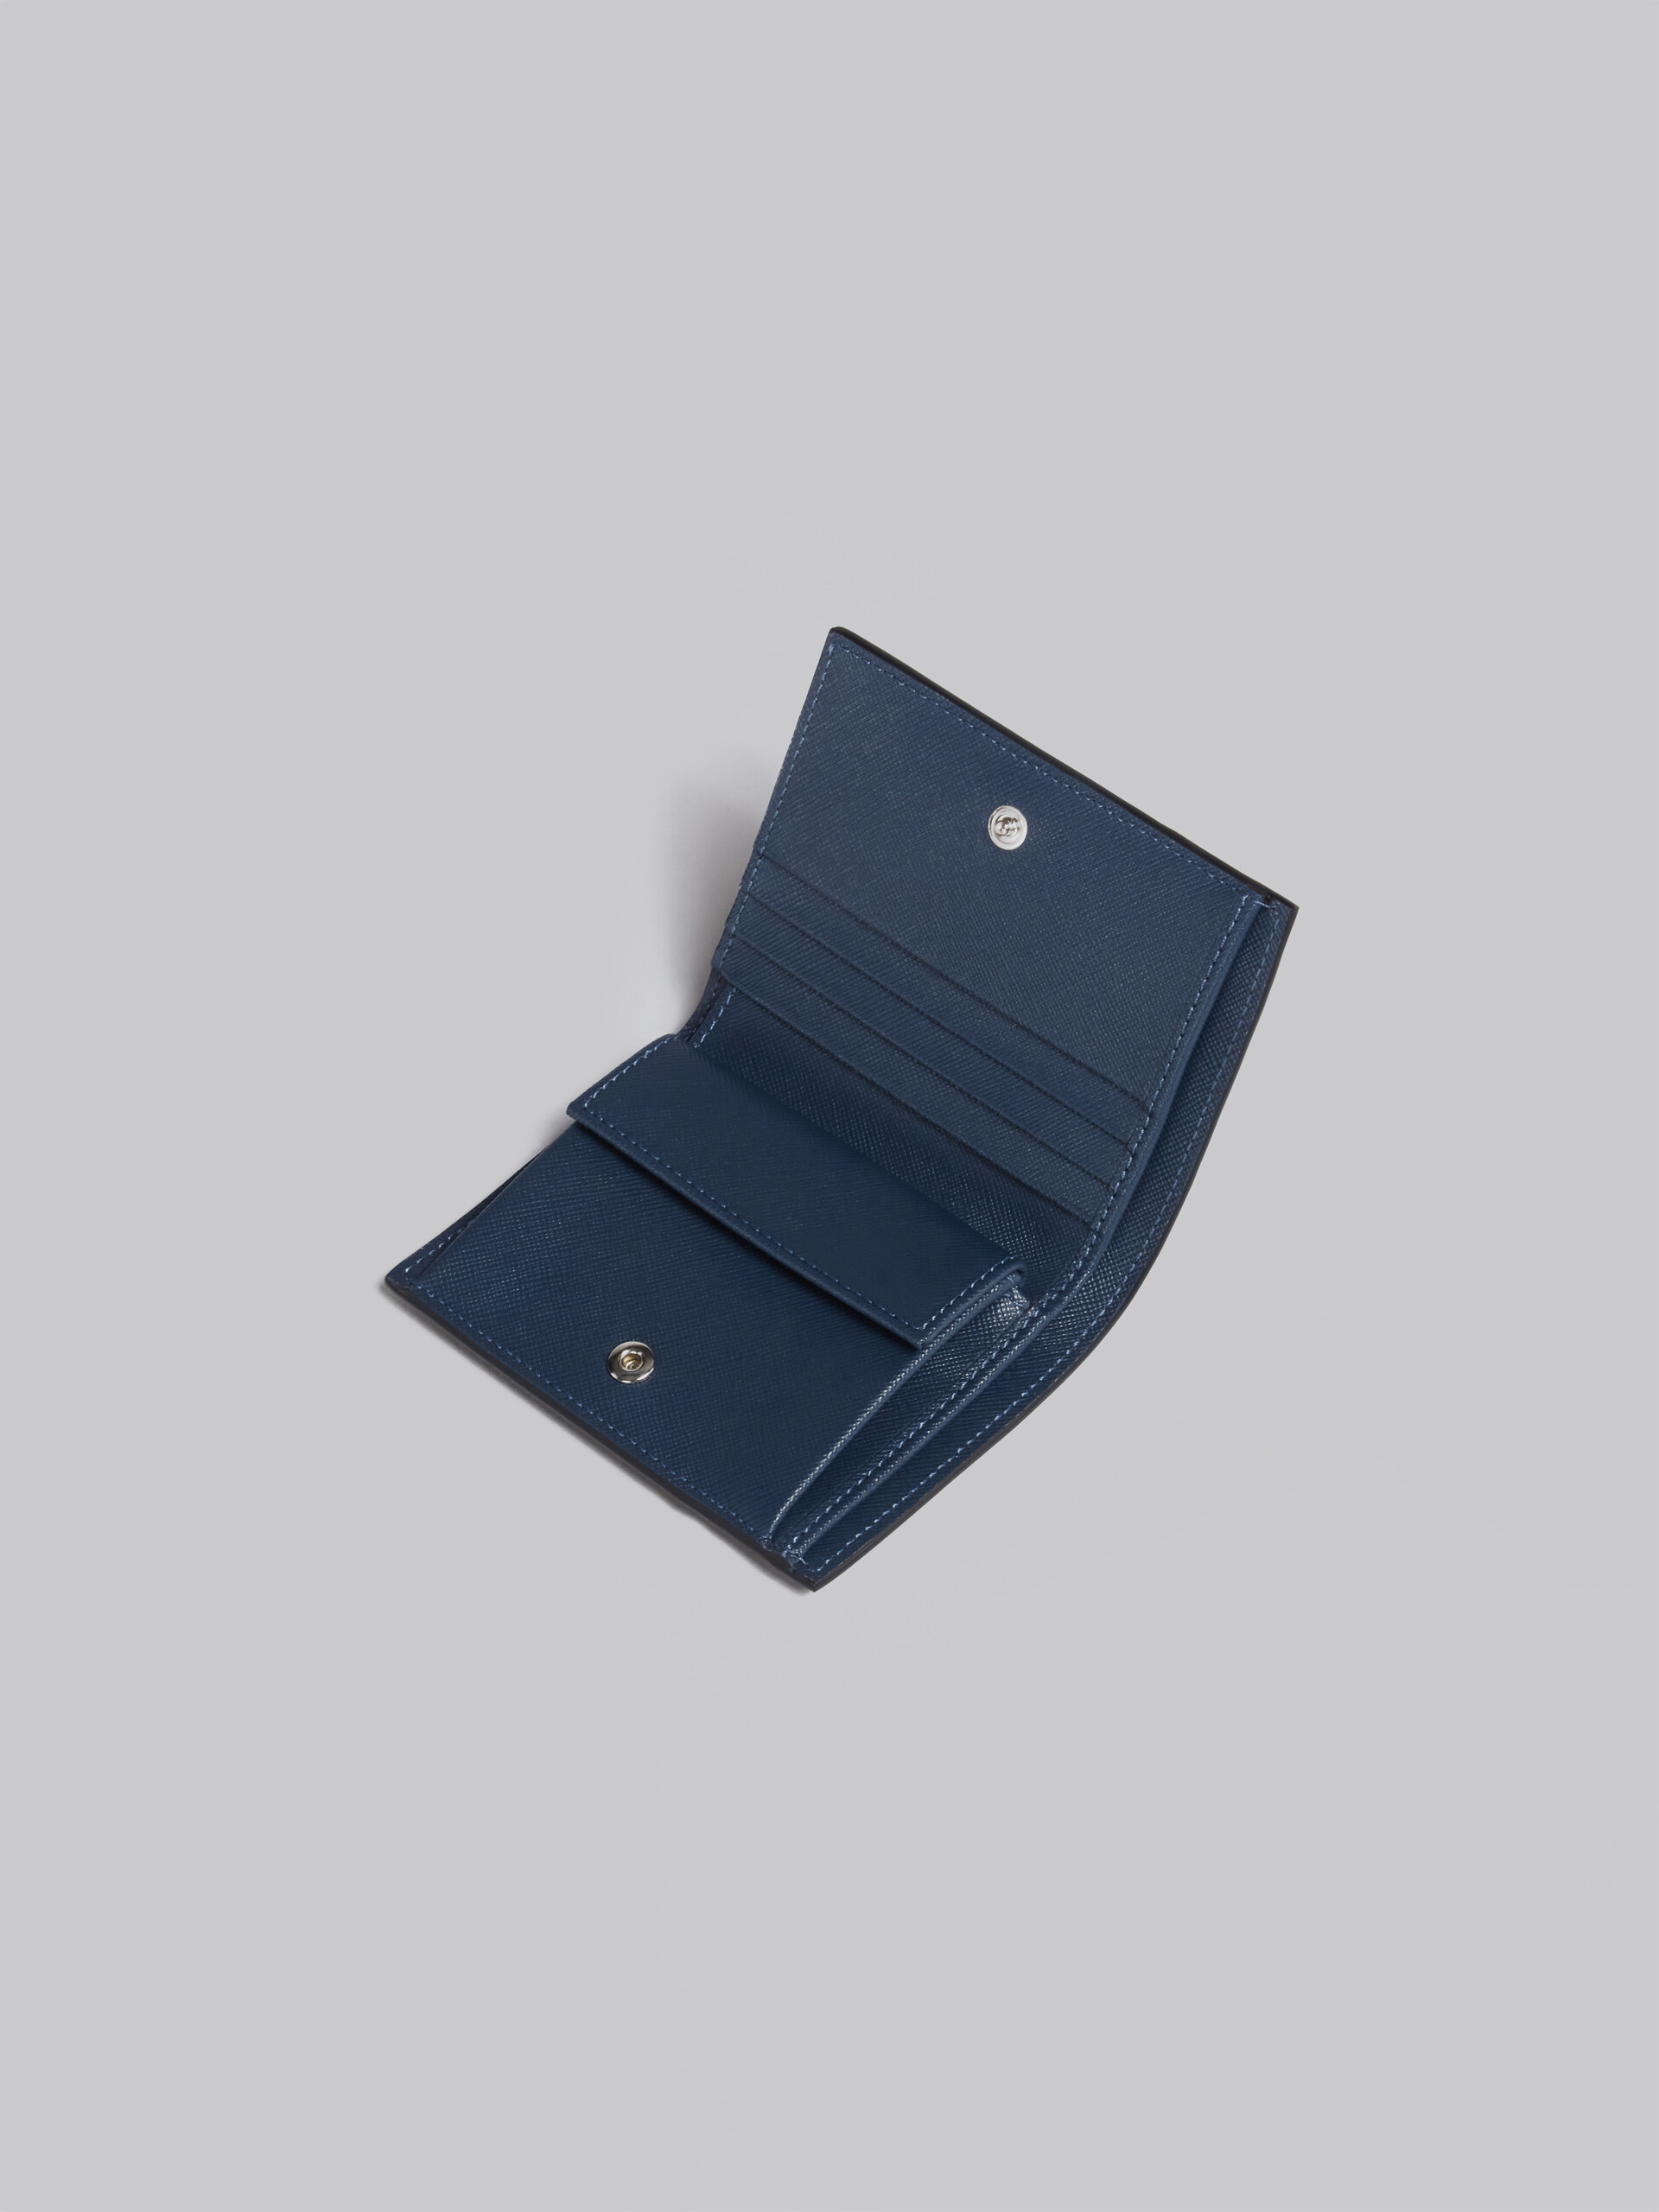 Portafoglio bi-fold in vitello Saffiano blu - Portafogli - Image 4